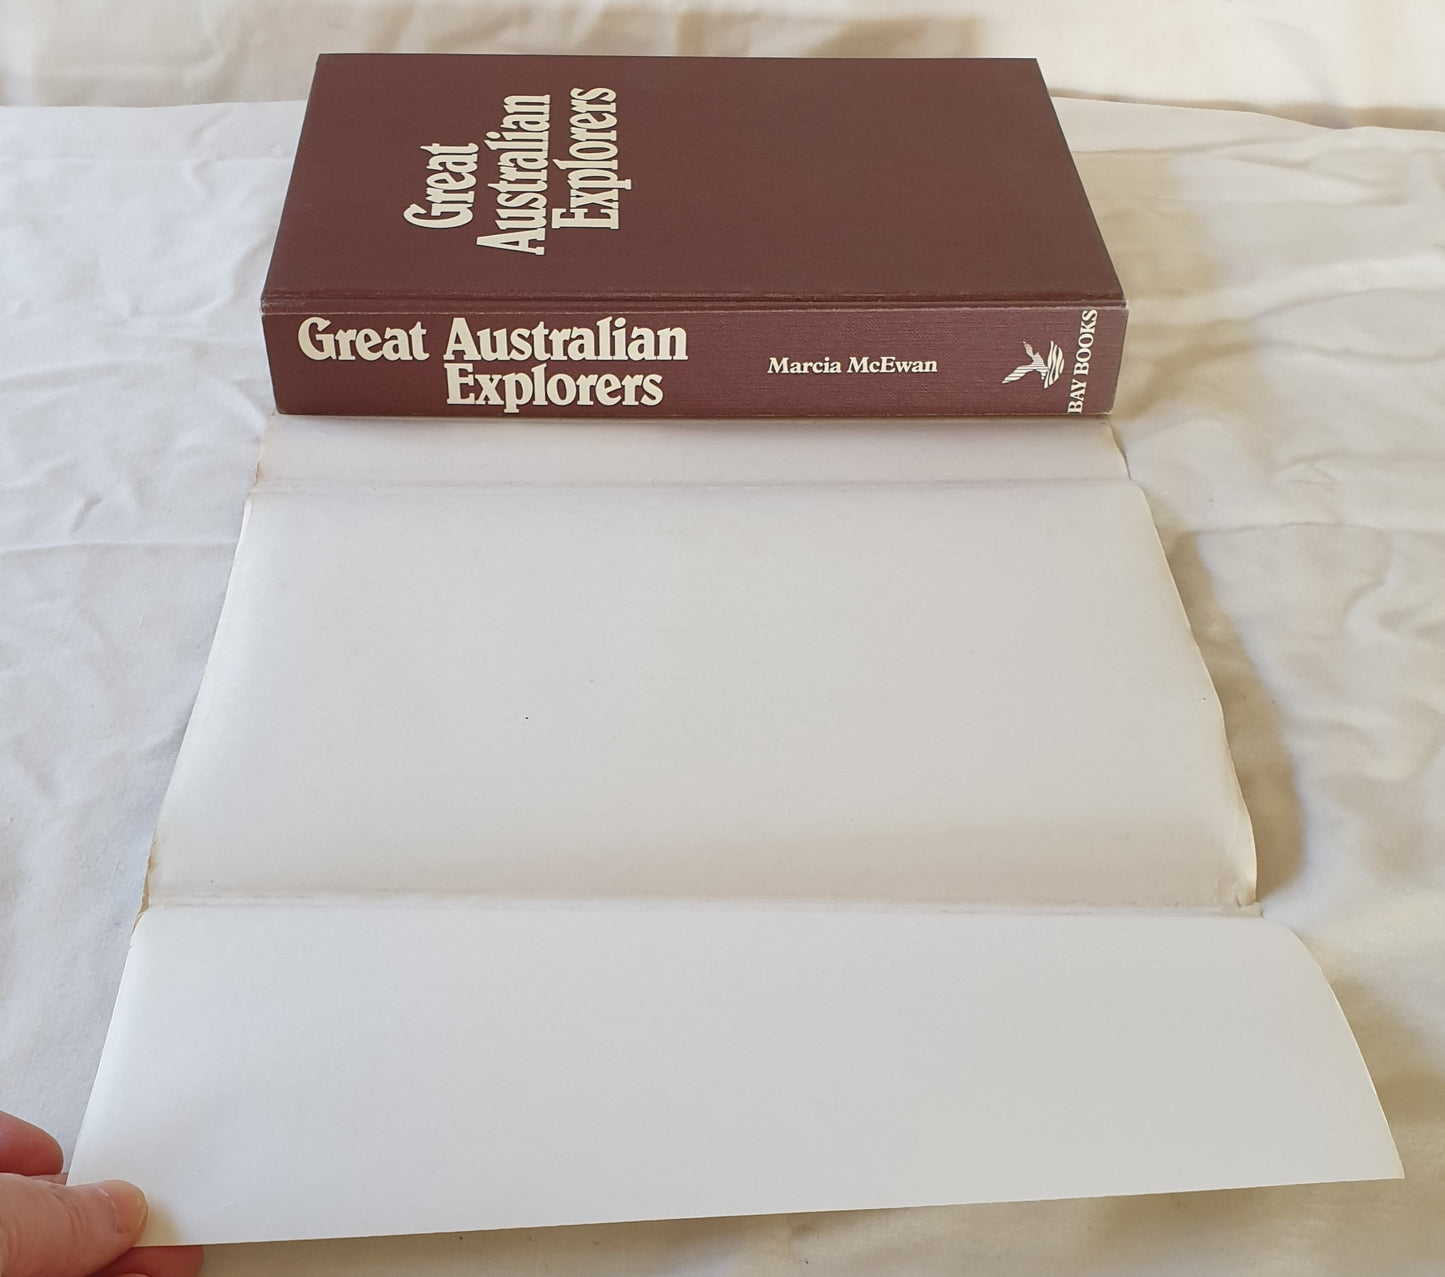 Great Australian Explorers by Marcia McEwan